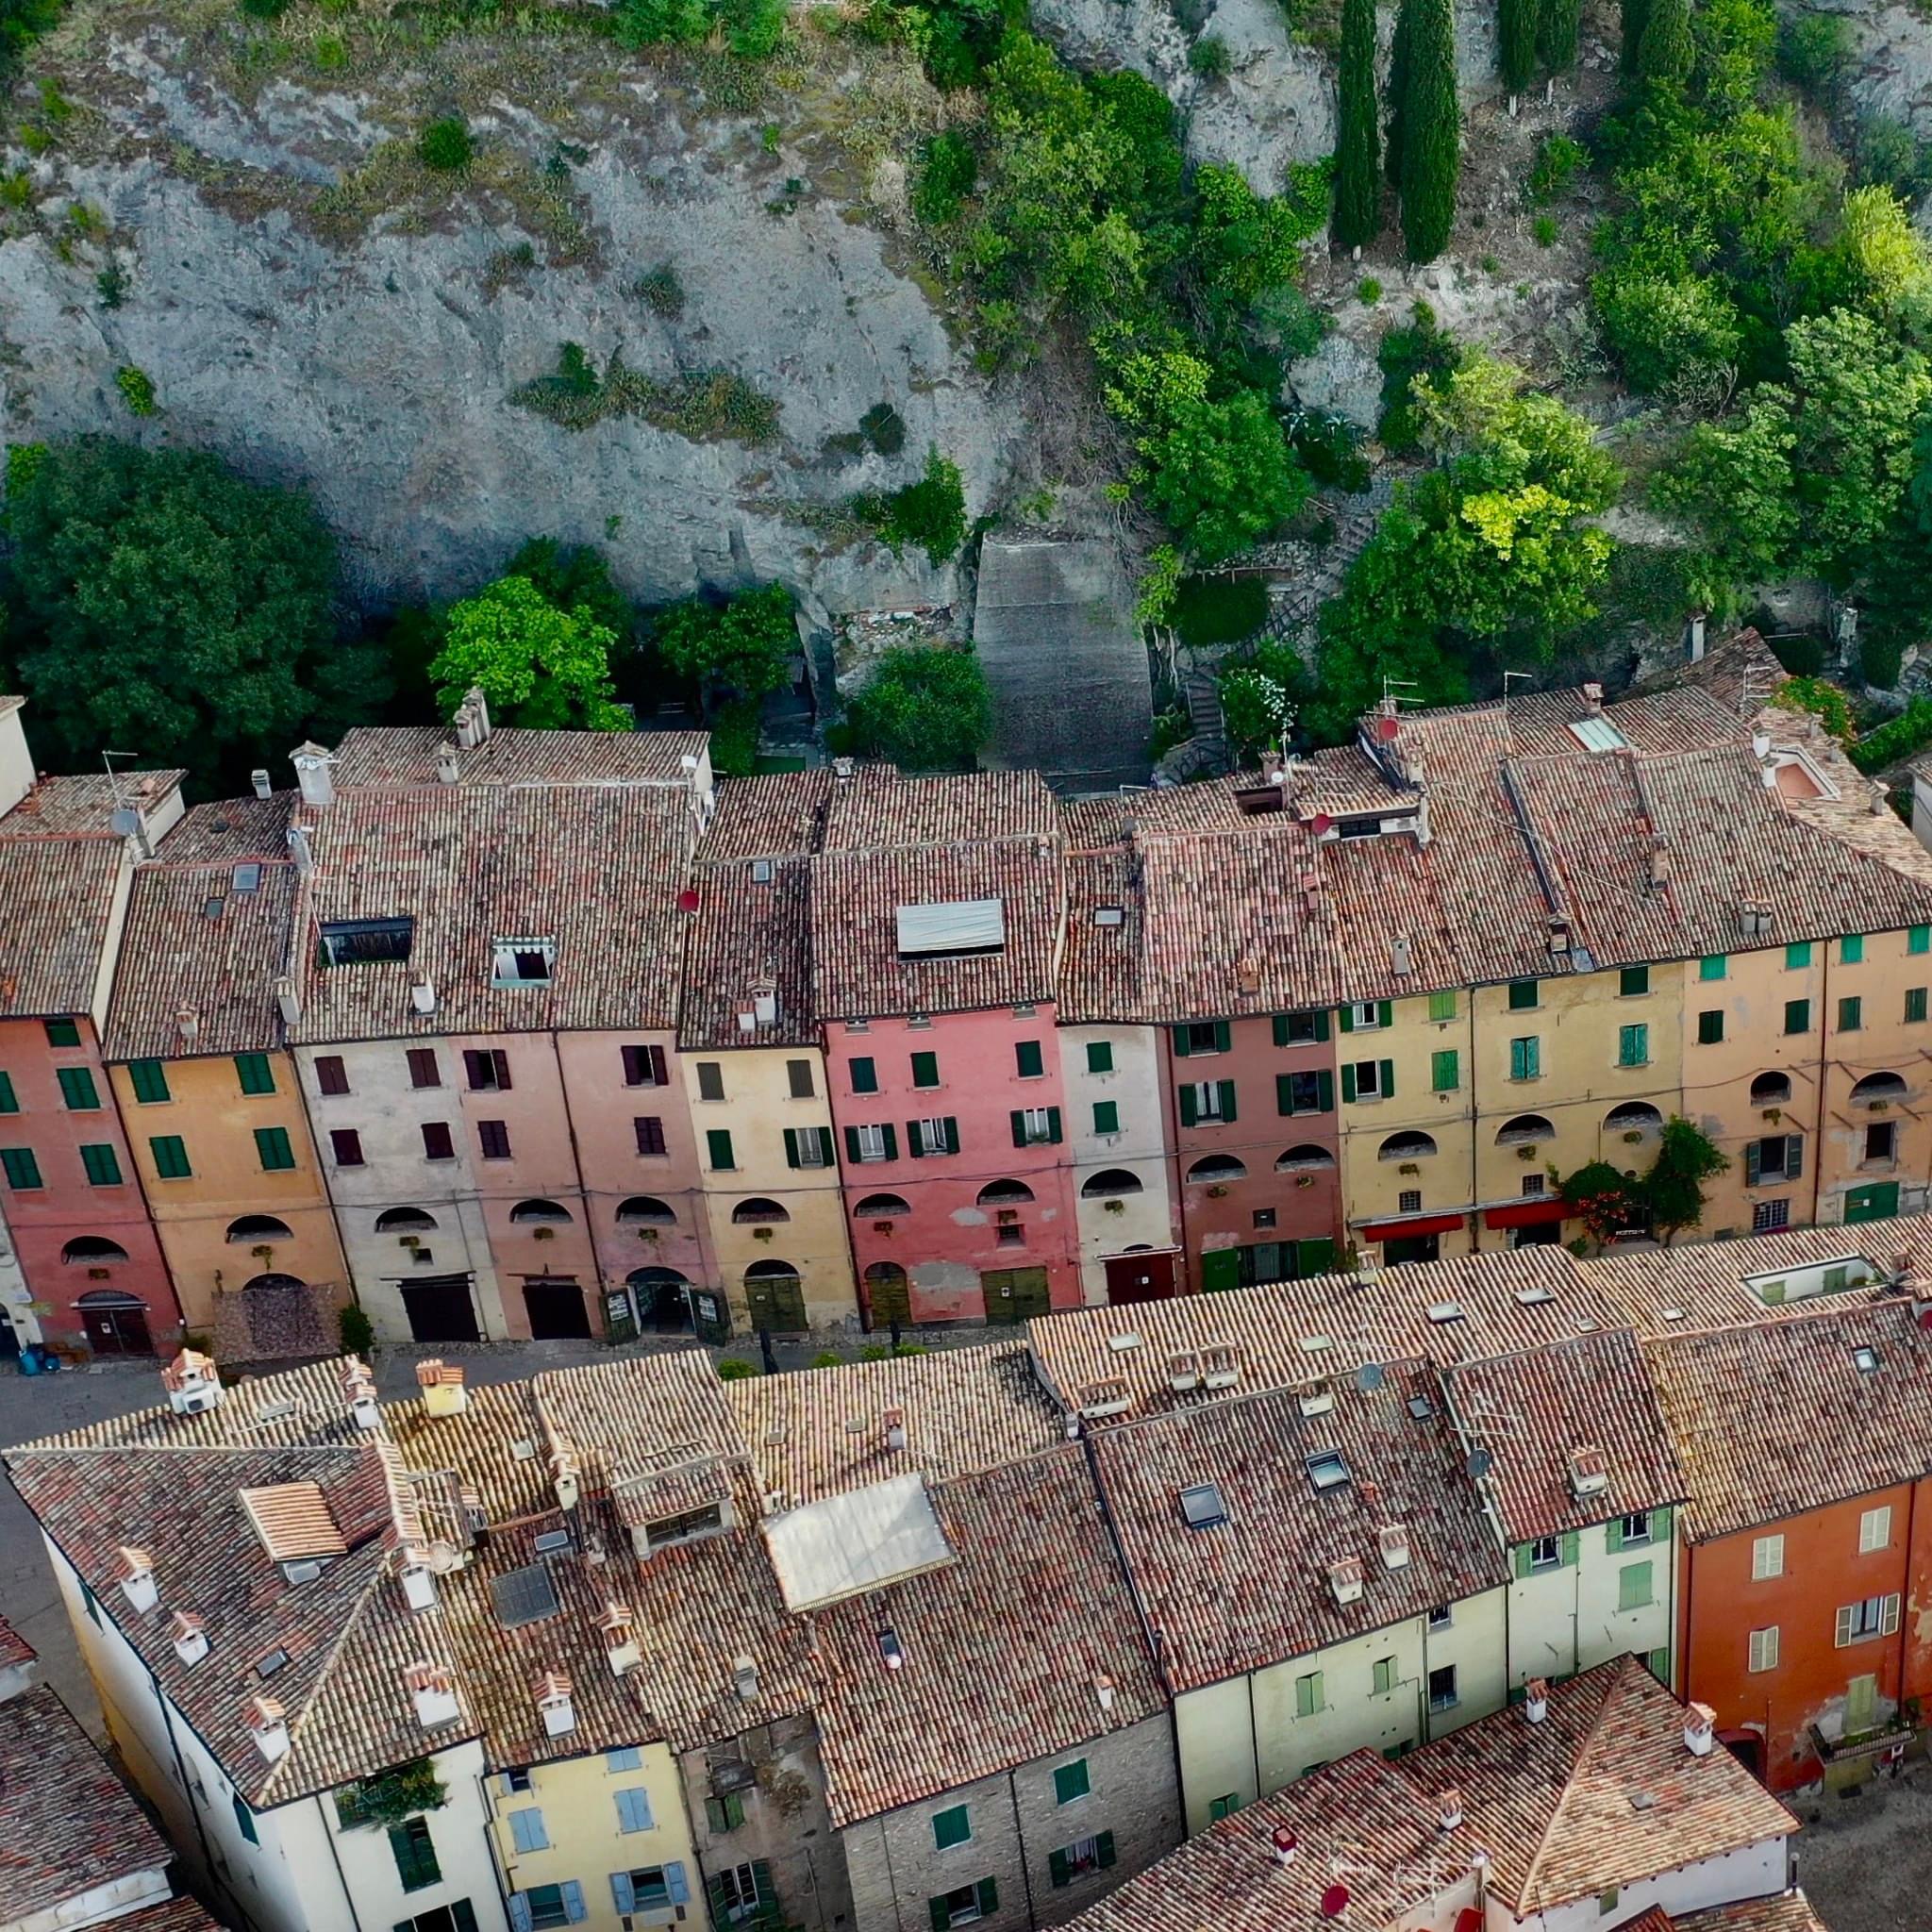 Brisighella, uno dei borghi più belli dell'Emilia-Romagna caratterizzato nella via principale da villette a schiera di diversi colori e costruite su crespi di roccia gessosa.